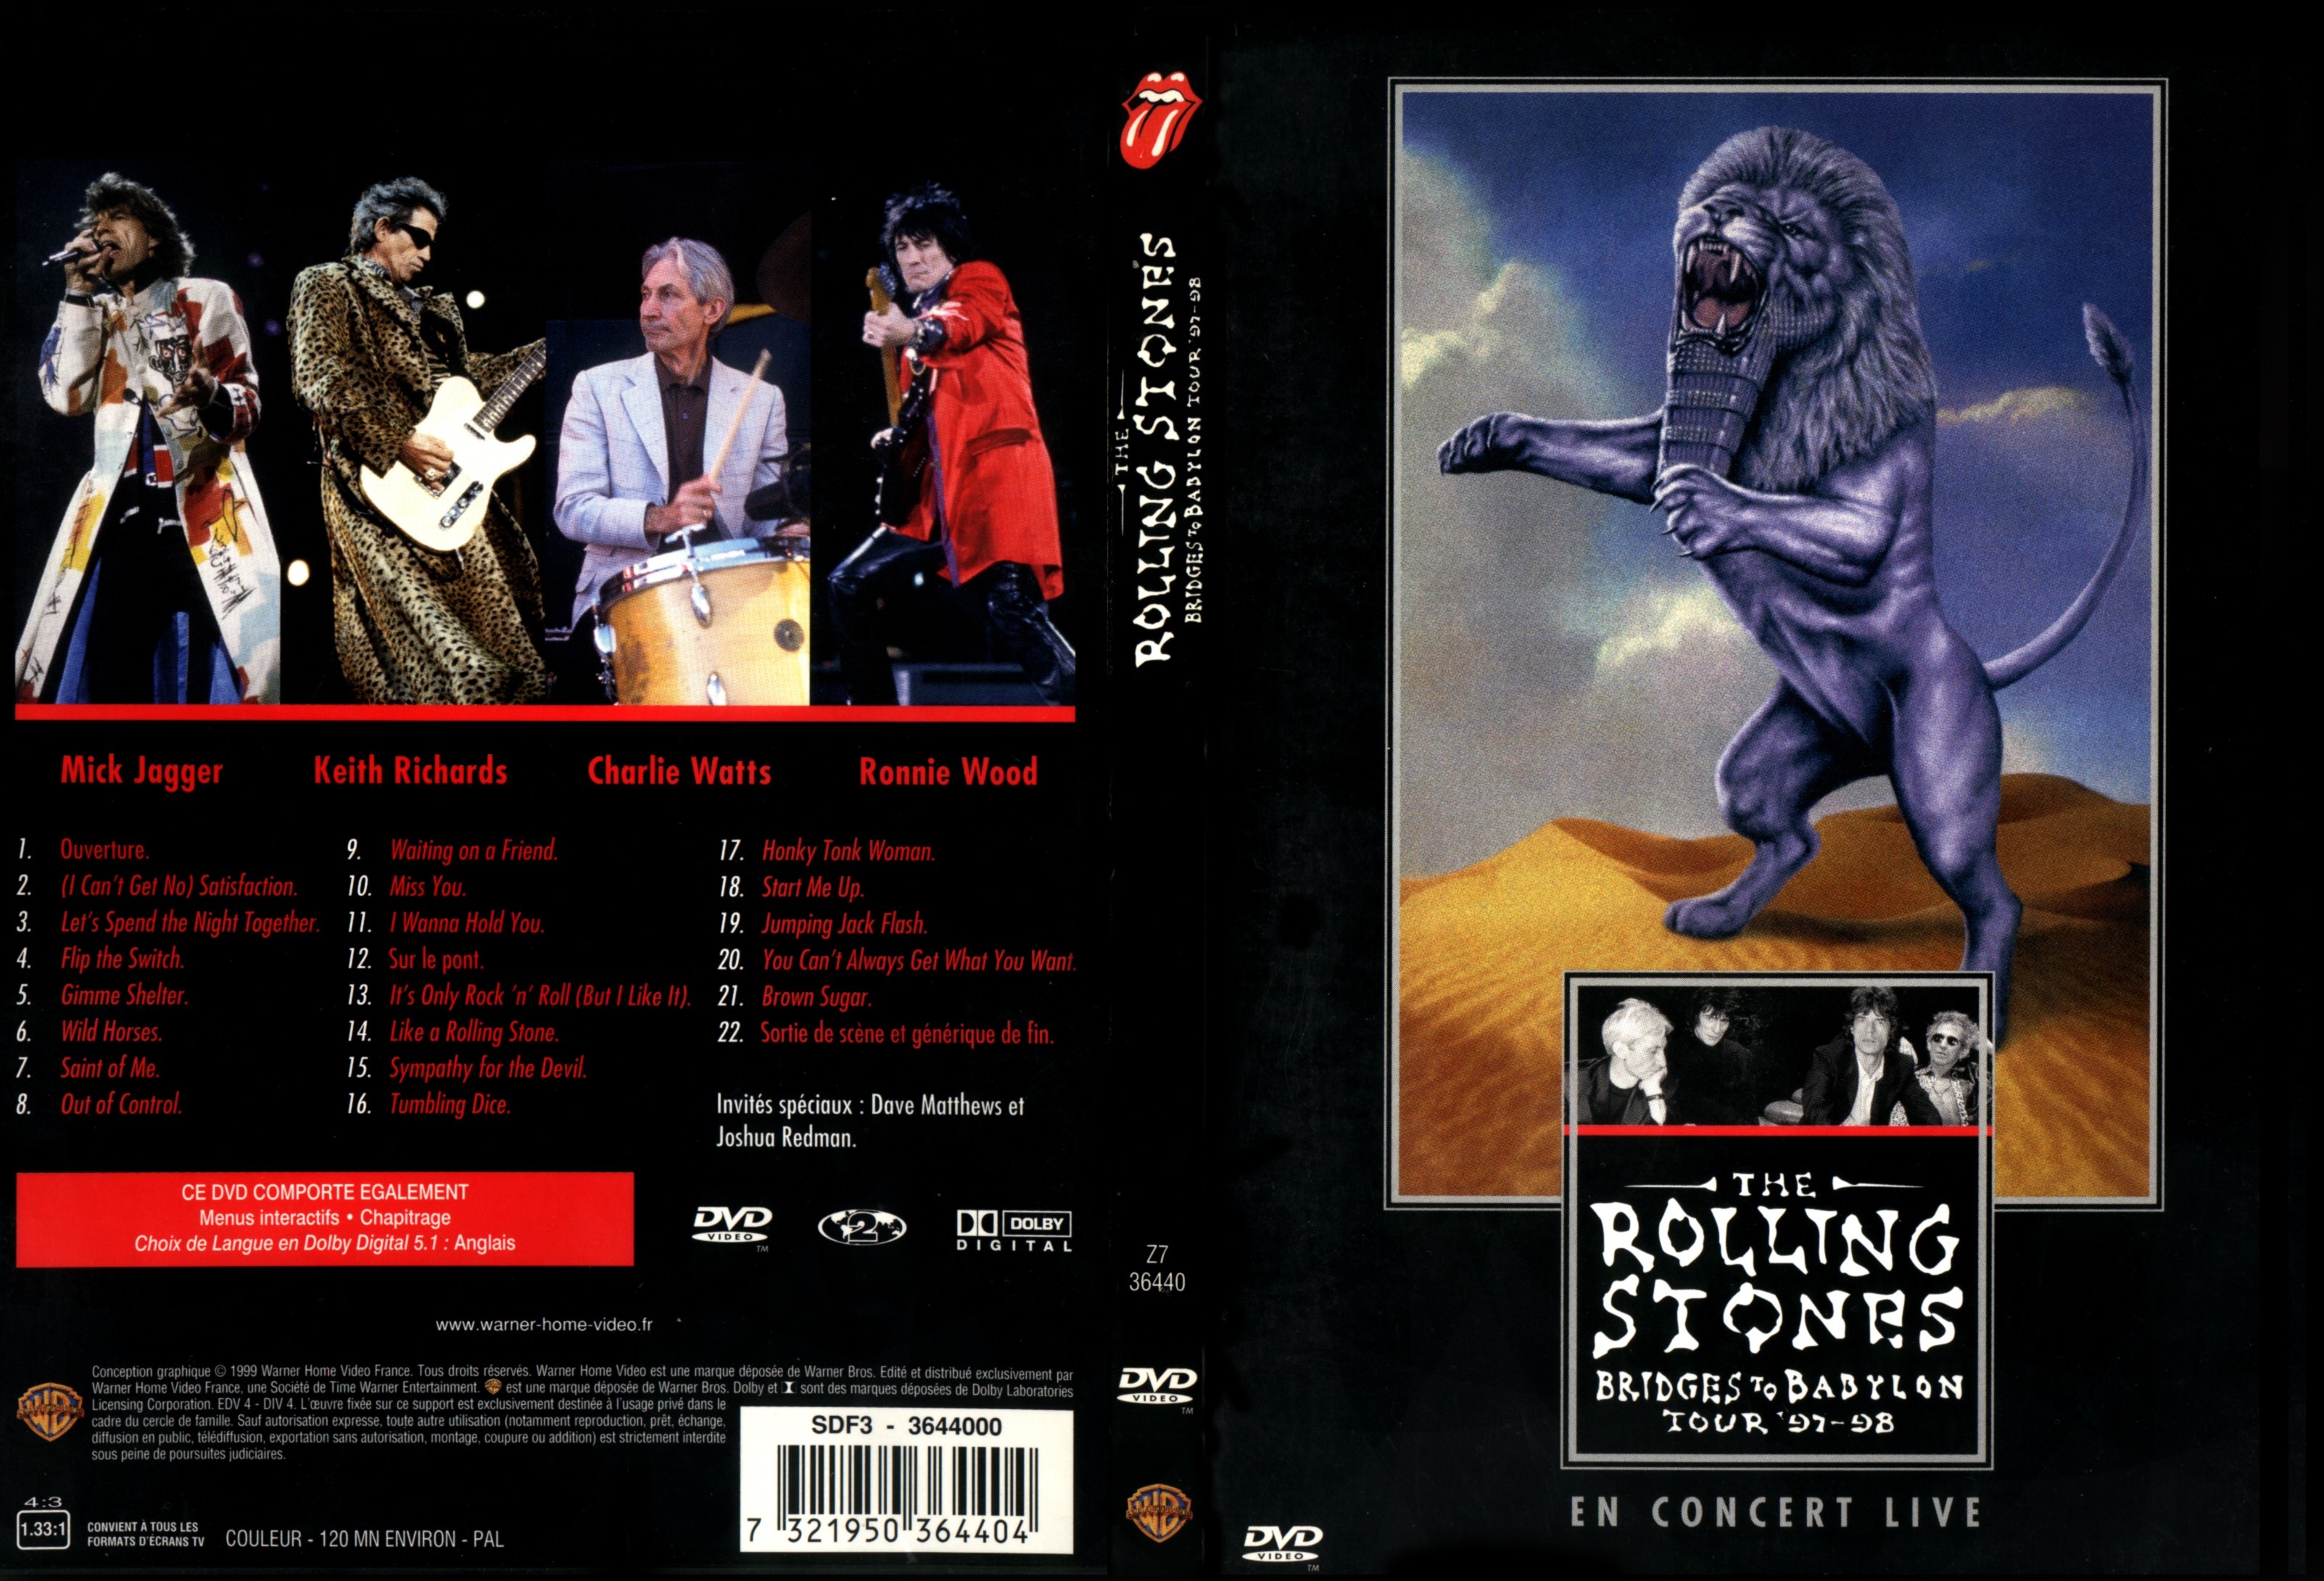 Jaquette DVD The Rolling Stones Bridges to Babylon tour 97-98